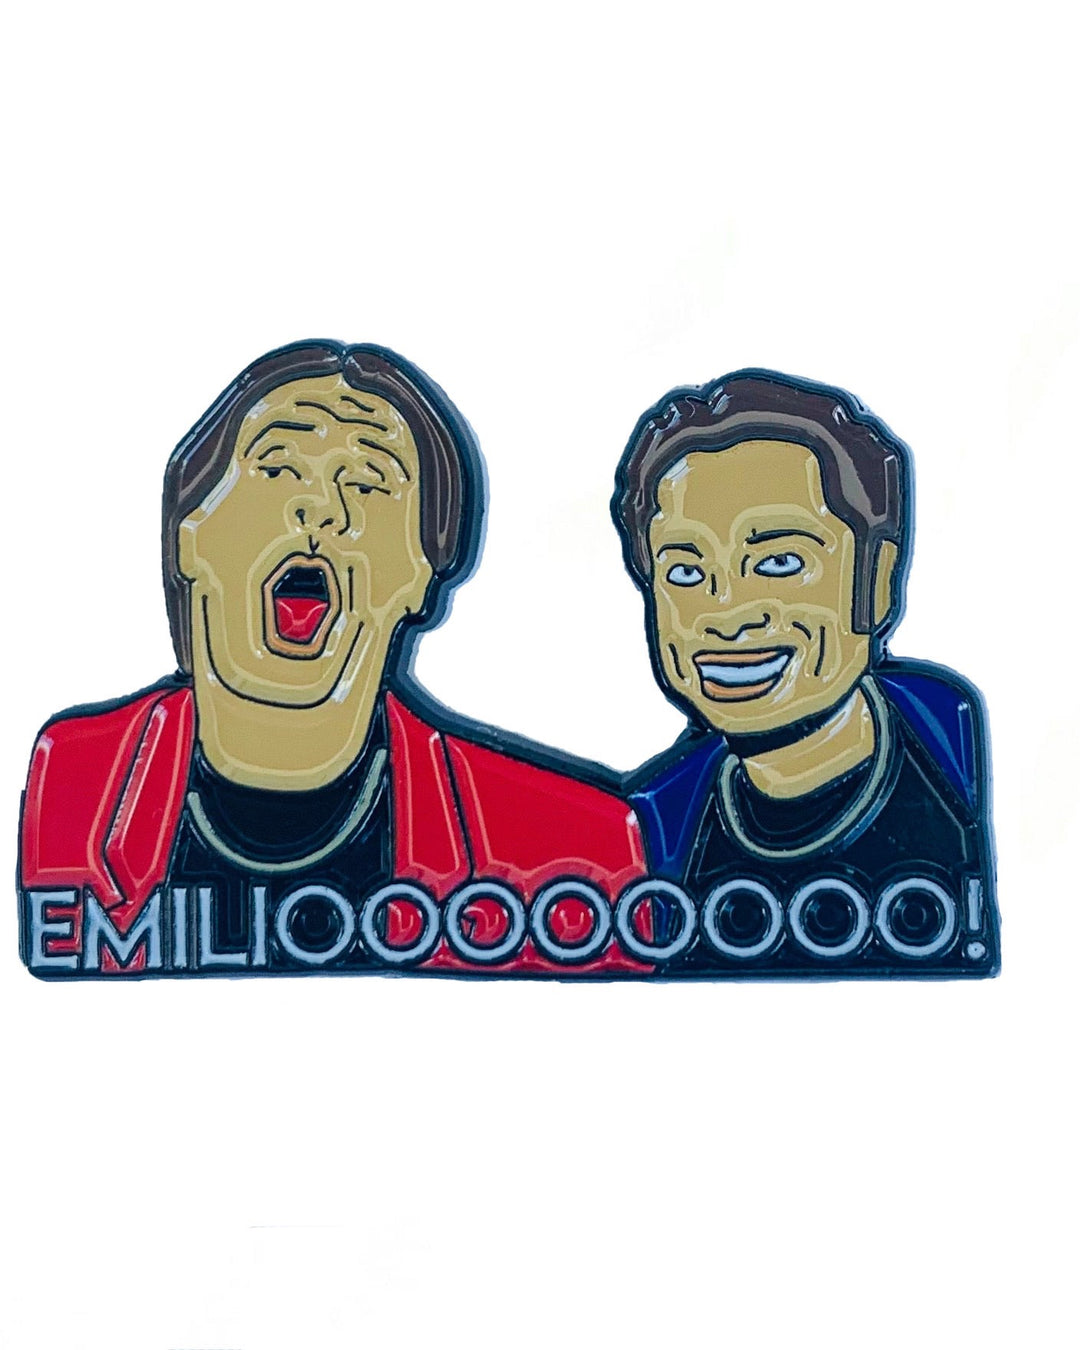 Emilioooooooo!